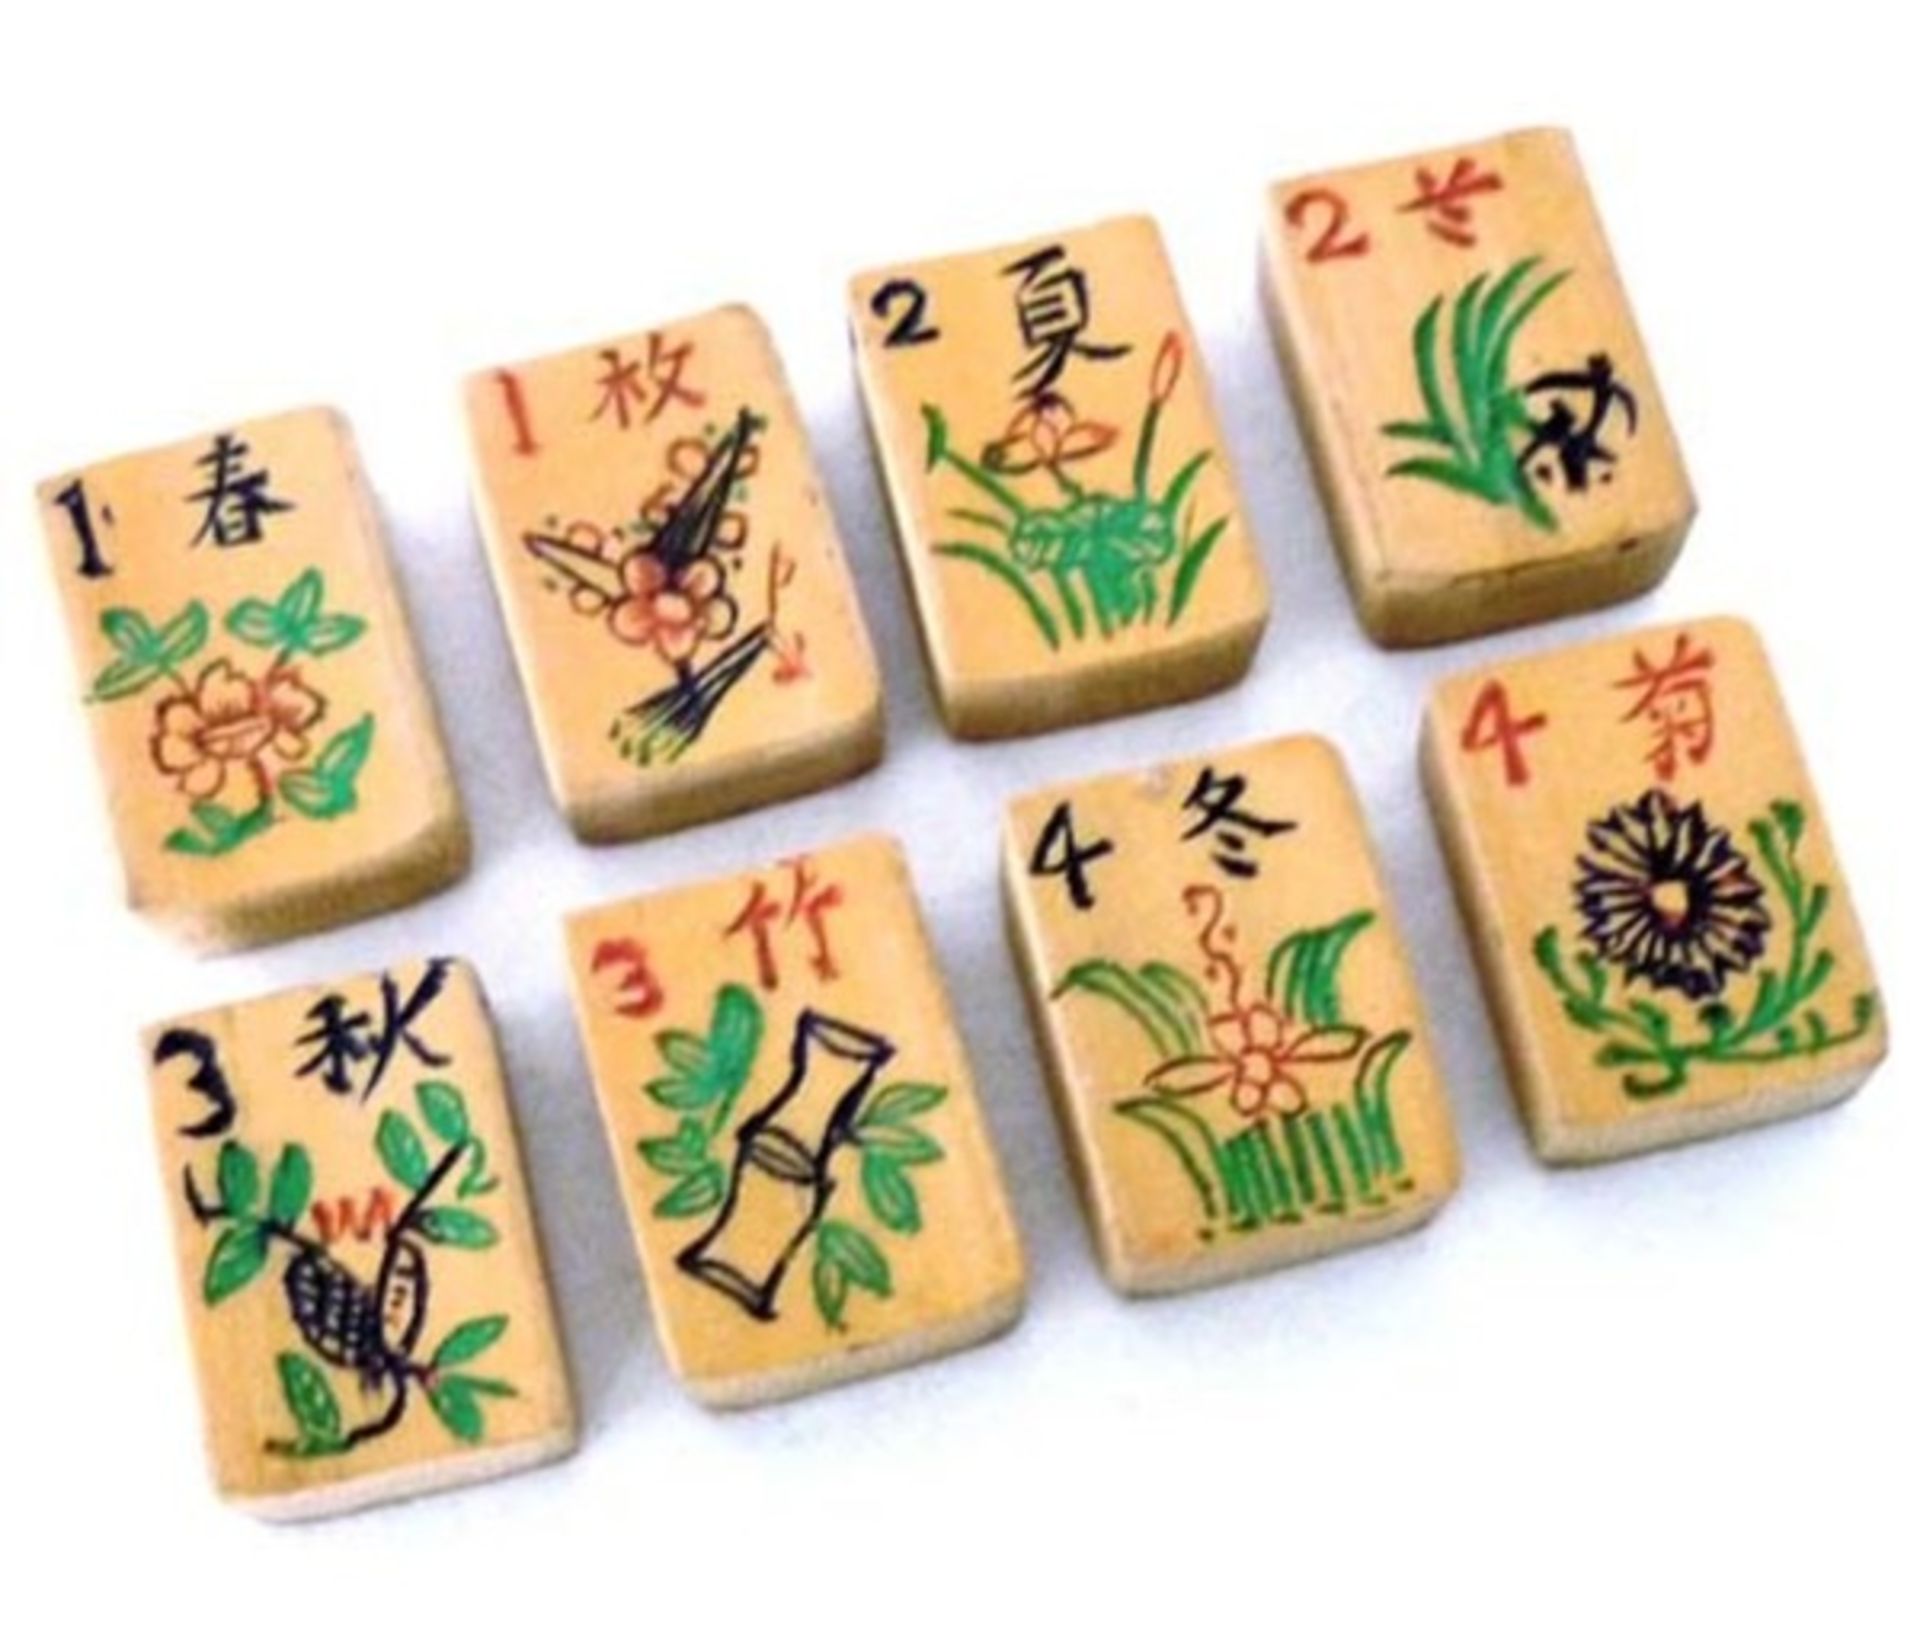 (Mahjong) Mahjong bamboe, langwerpig veelkleurige doos, ca. 1924 - Bild 6 aus 9